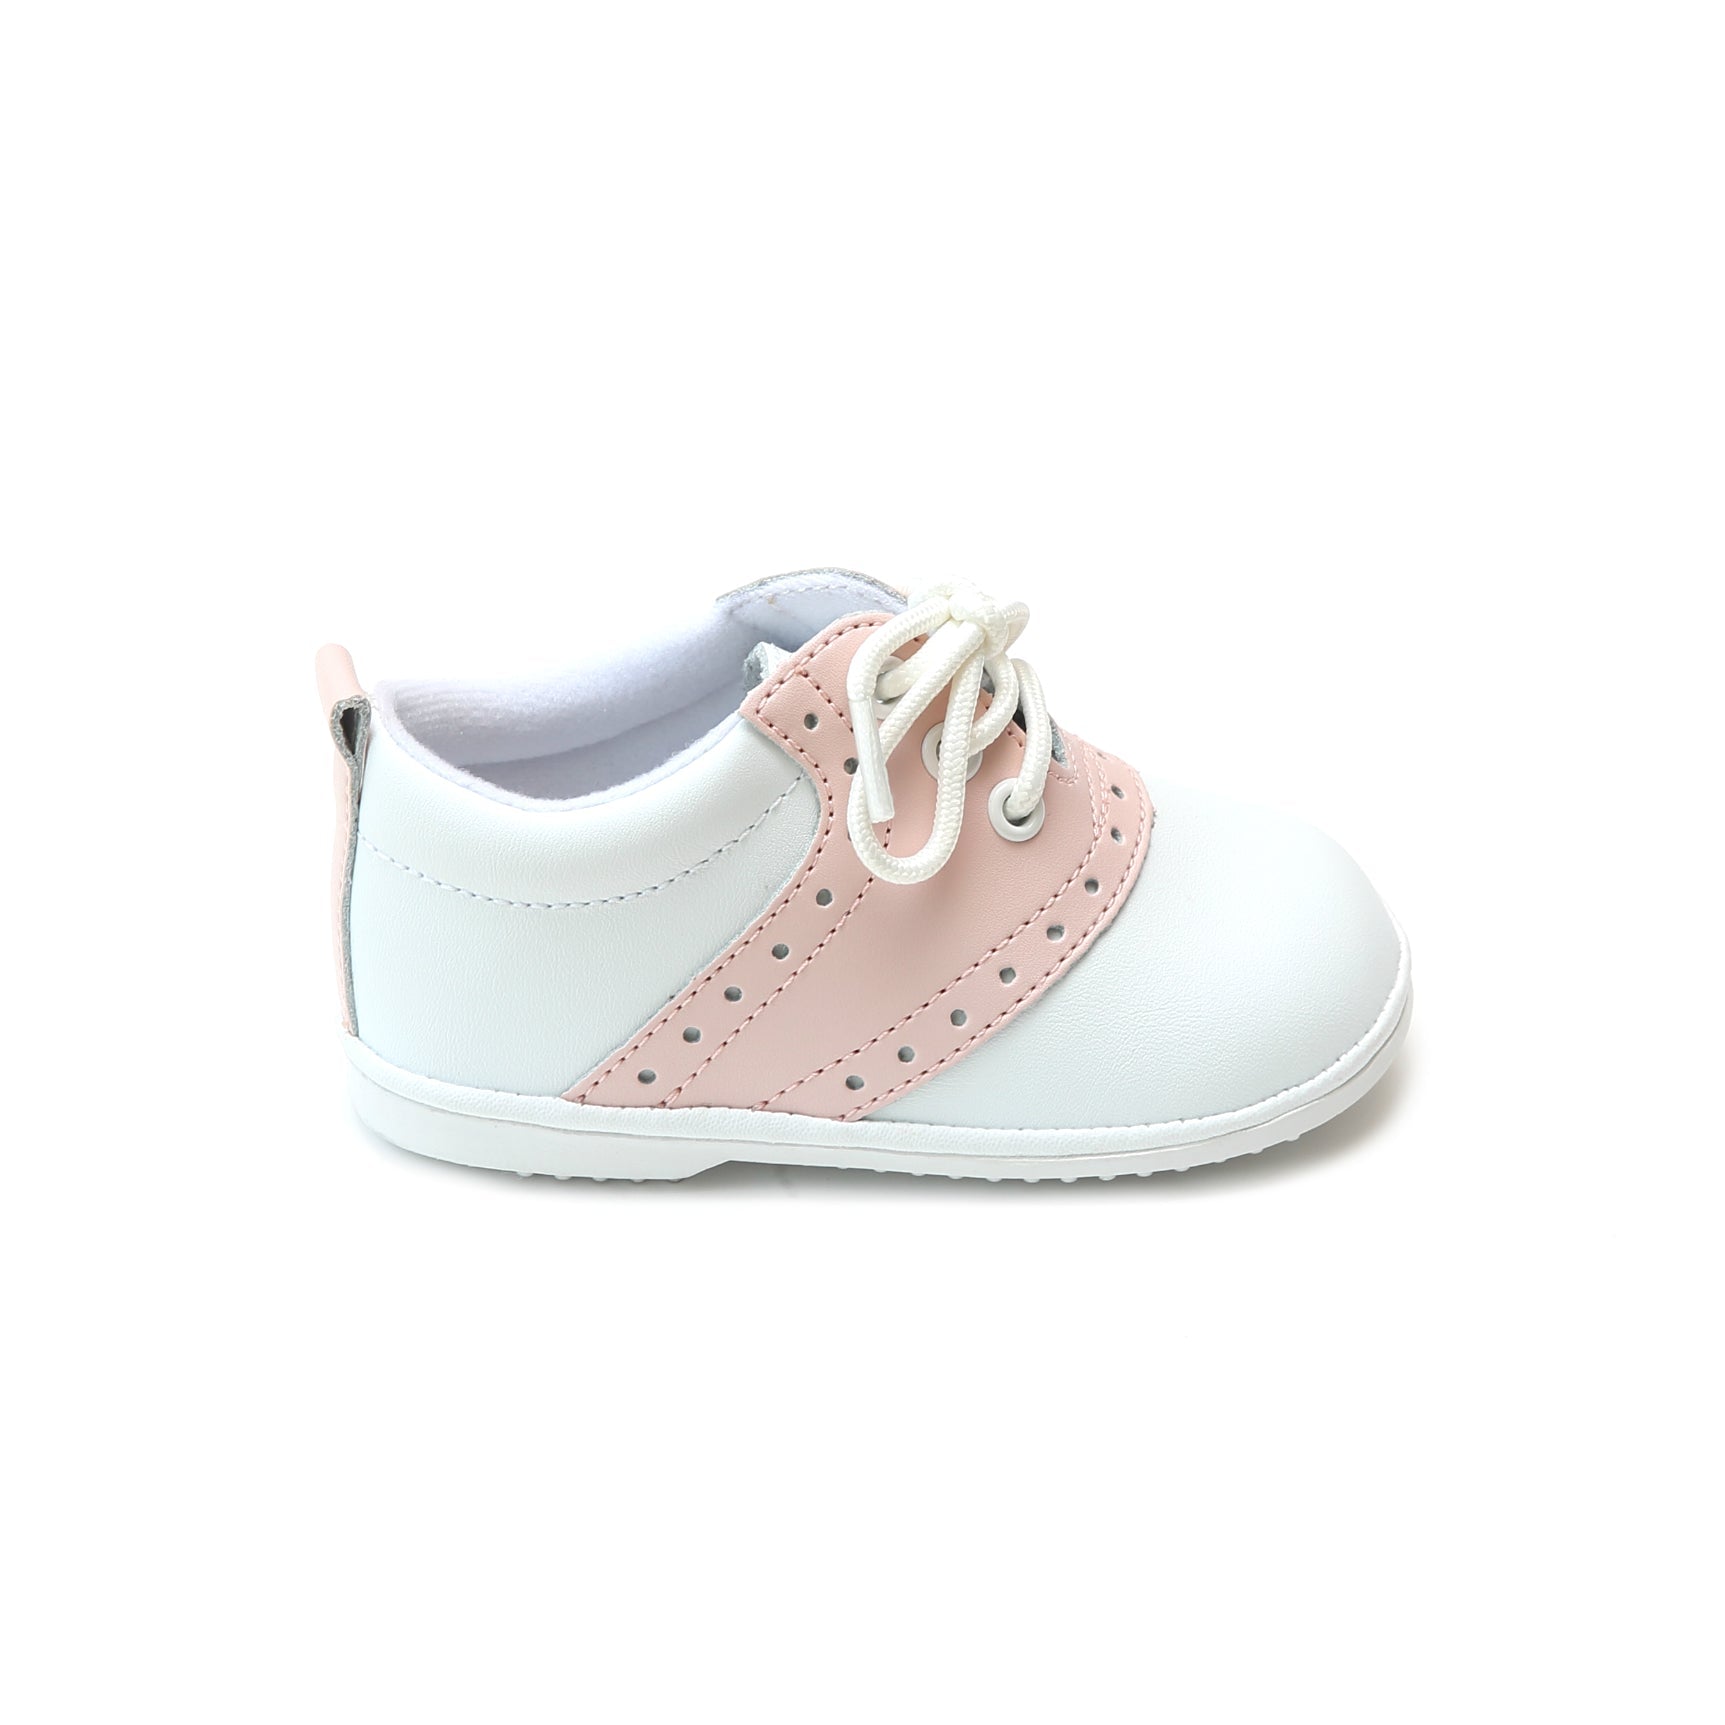 Addie Pink Saddle Oxford Shoe - Babies & Toddlers